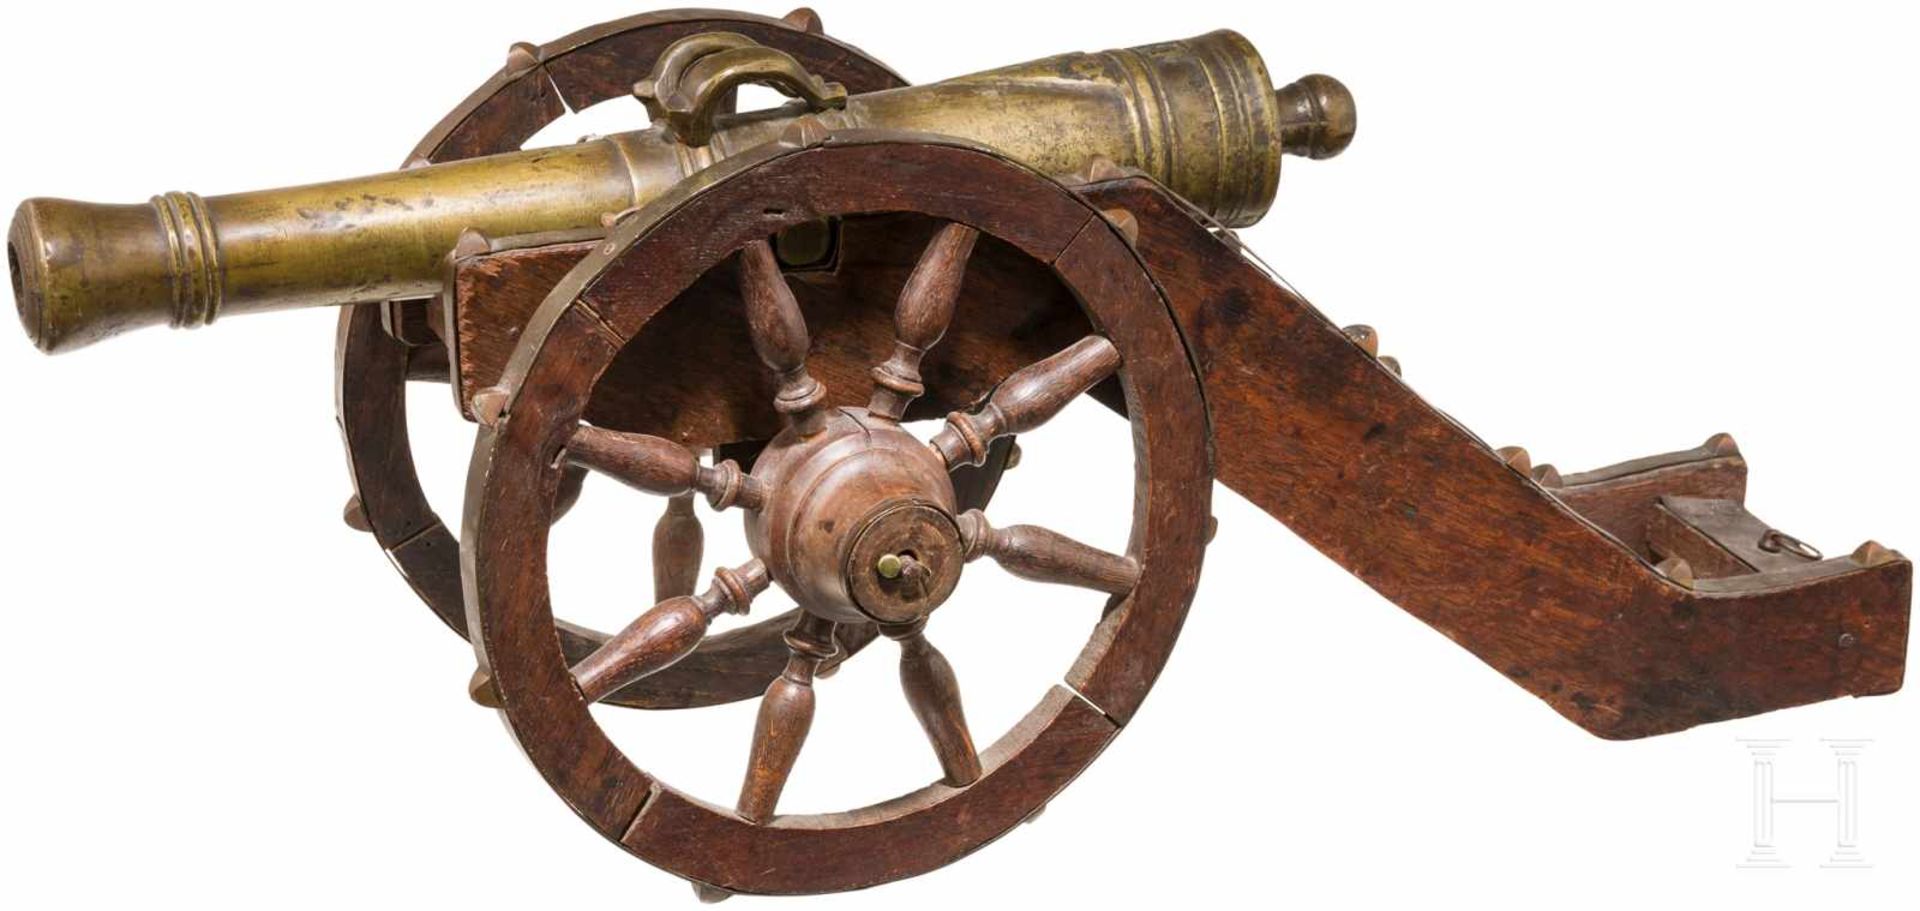 Modellkanone, deutsch, Historismus, um 1900Konisches Geschützrohr aus Bronze mit kanonierter